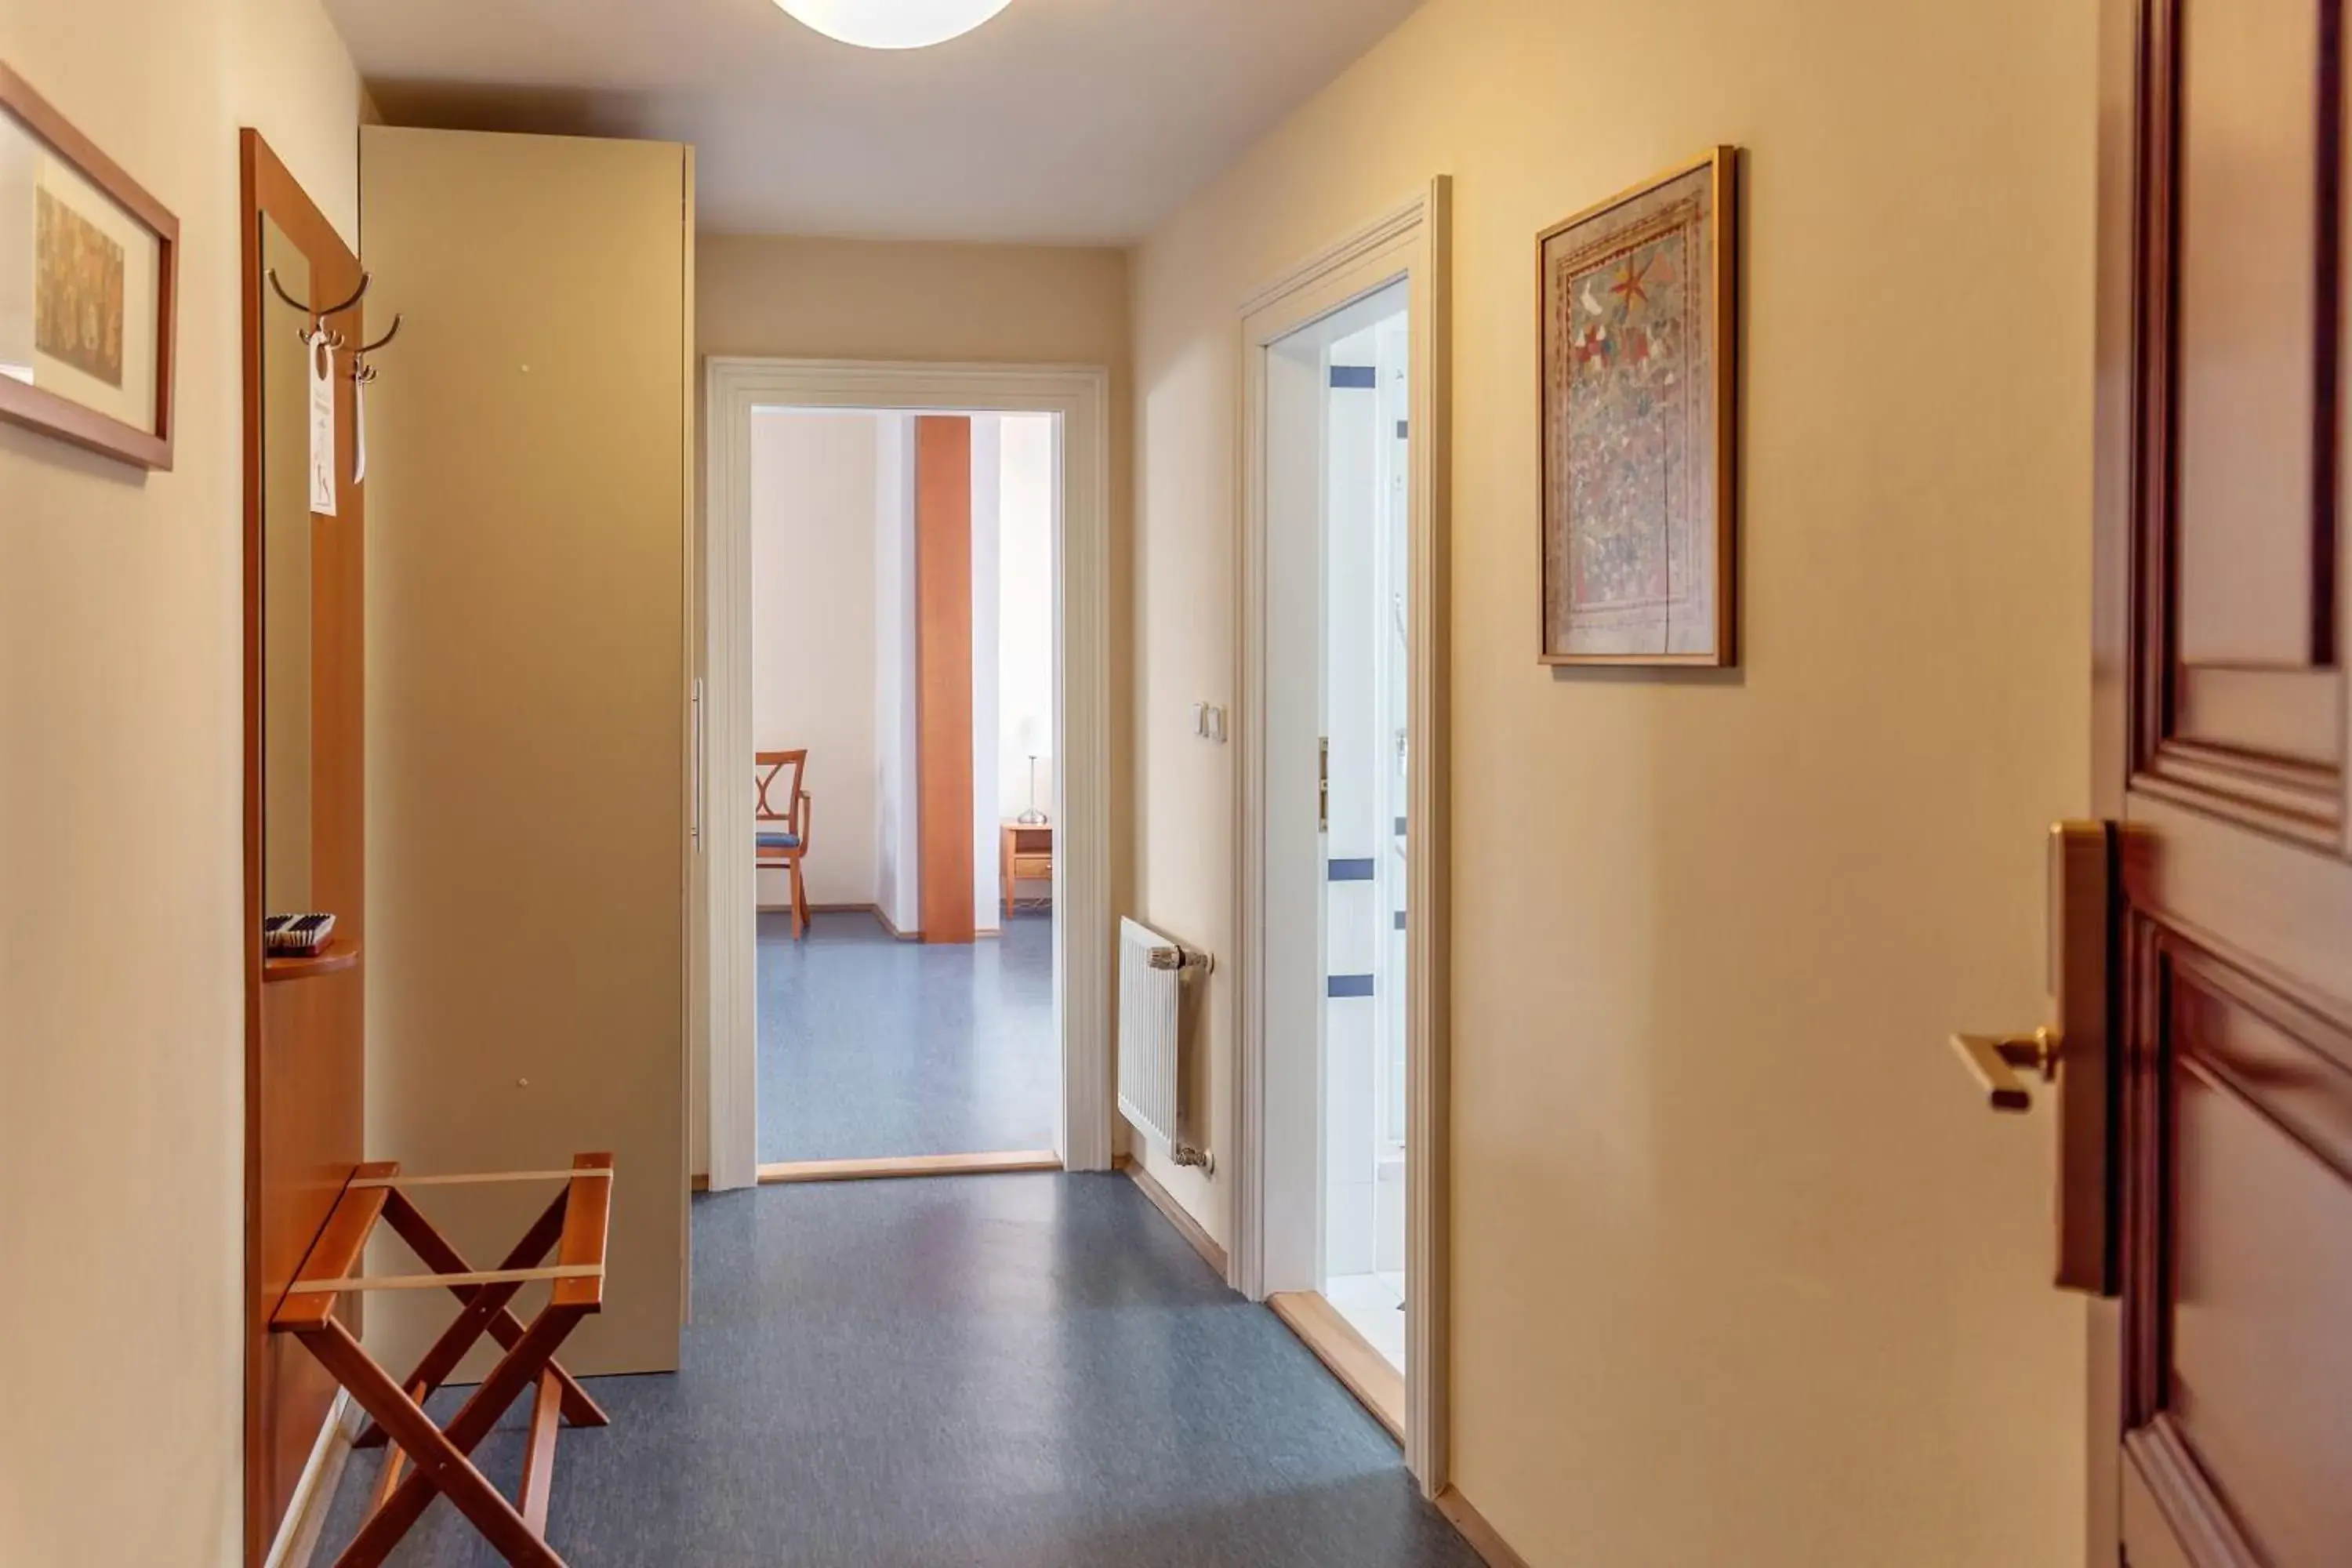 Area and facilities in Aparthotel Sibelius